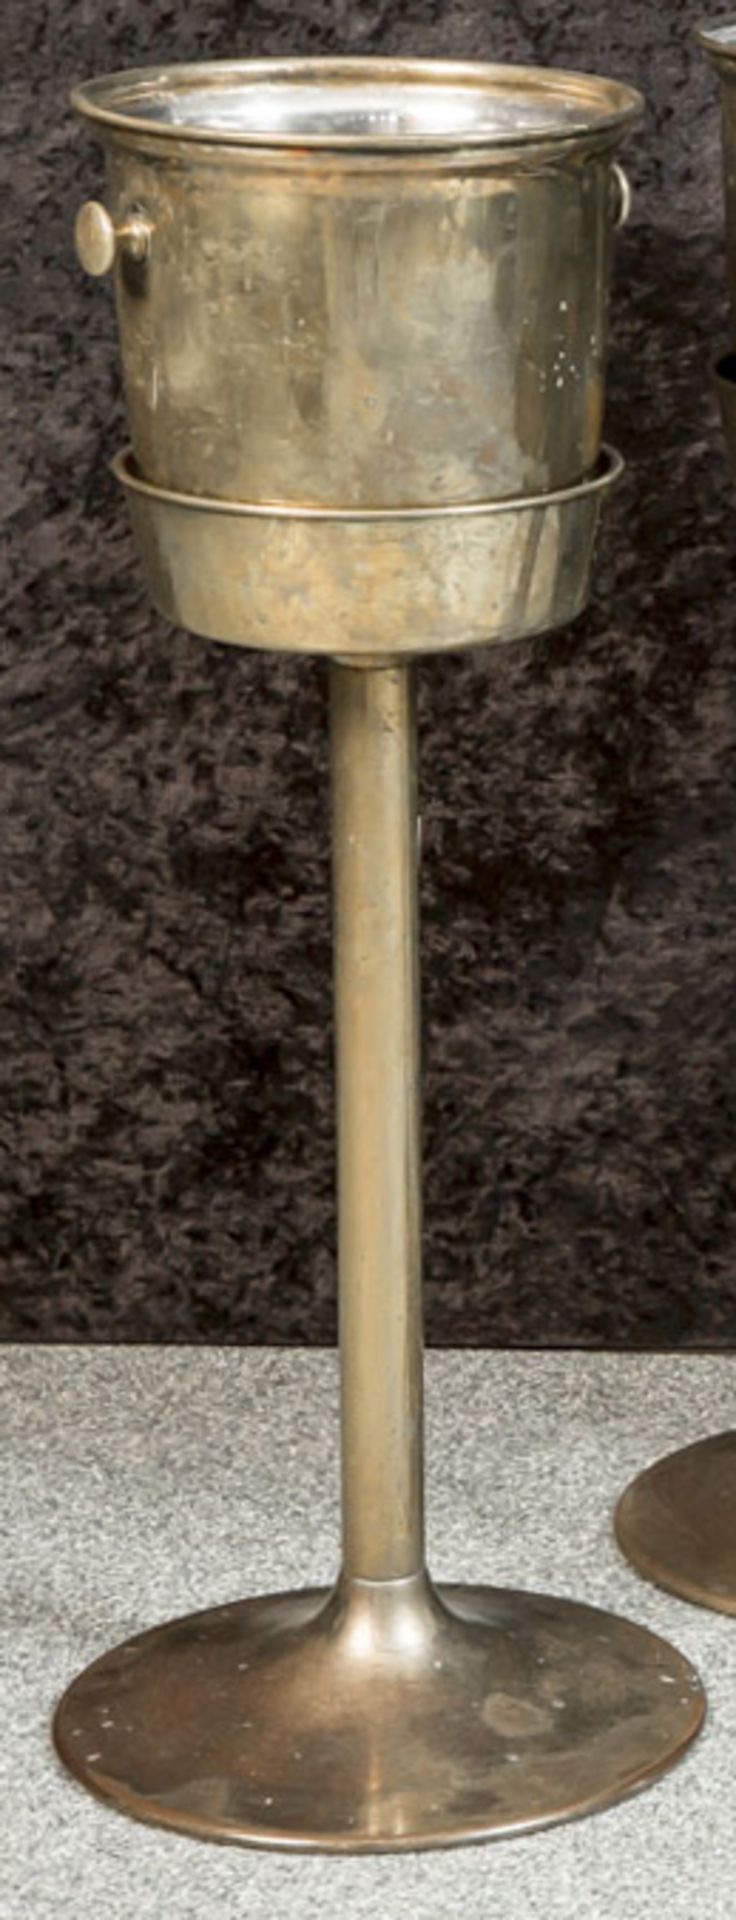 Champagner- u. Sektkühler, wohl 50er/60er Jahre, Messing, auf hohem Standfuß. H. ca. 77 cm.